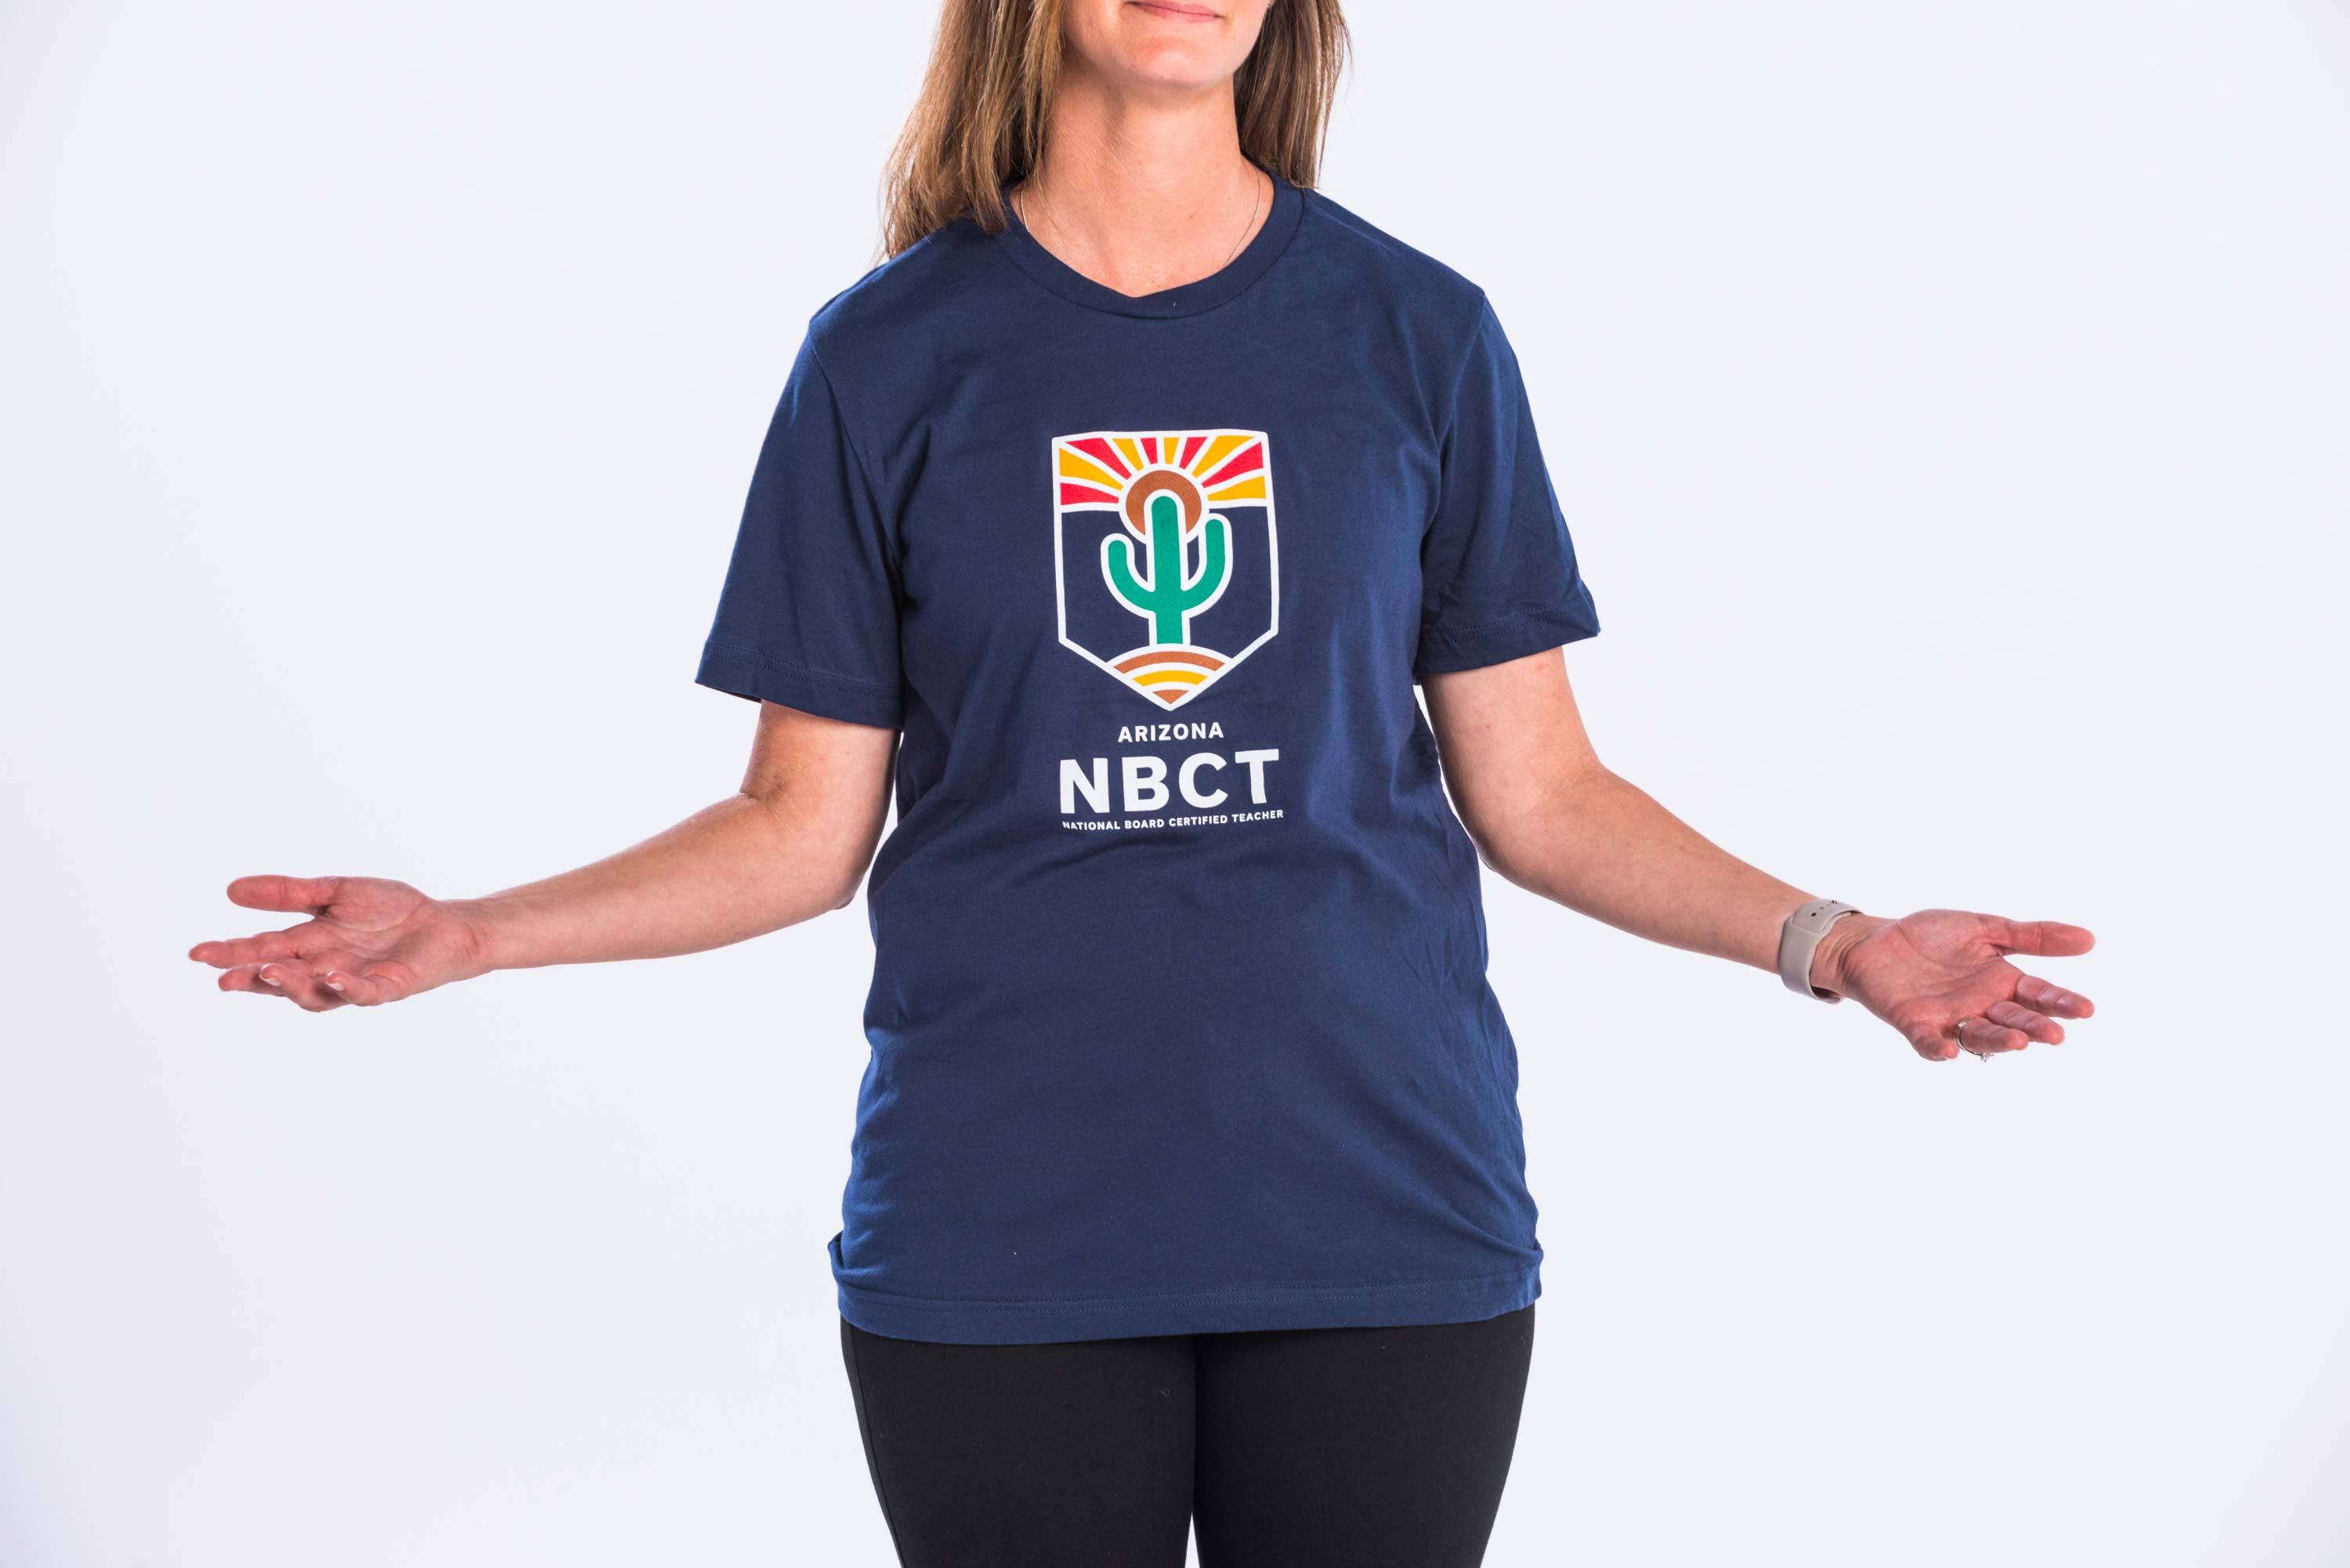 2019 National Board Certified Teacher T-Shirt